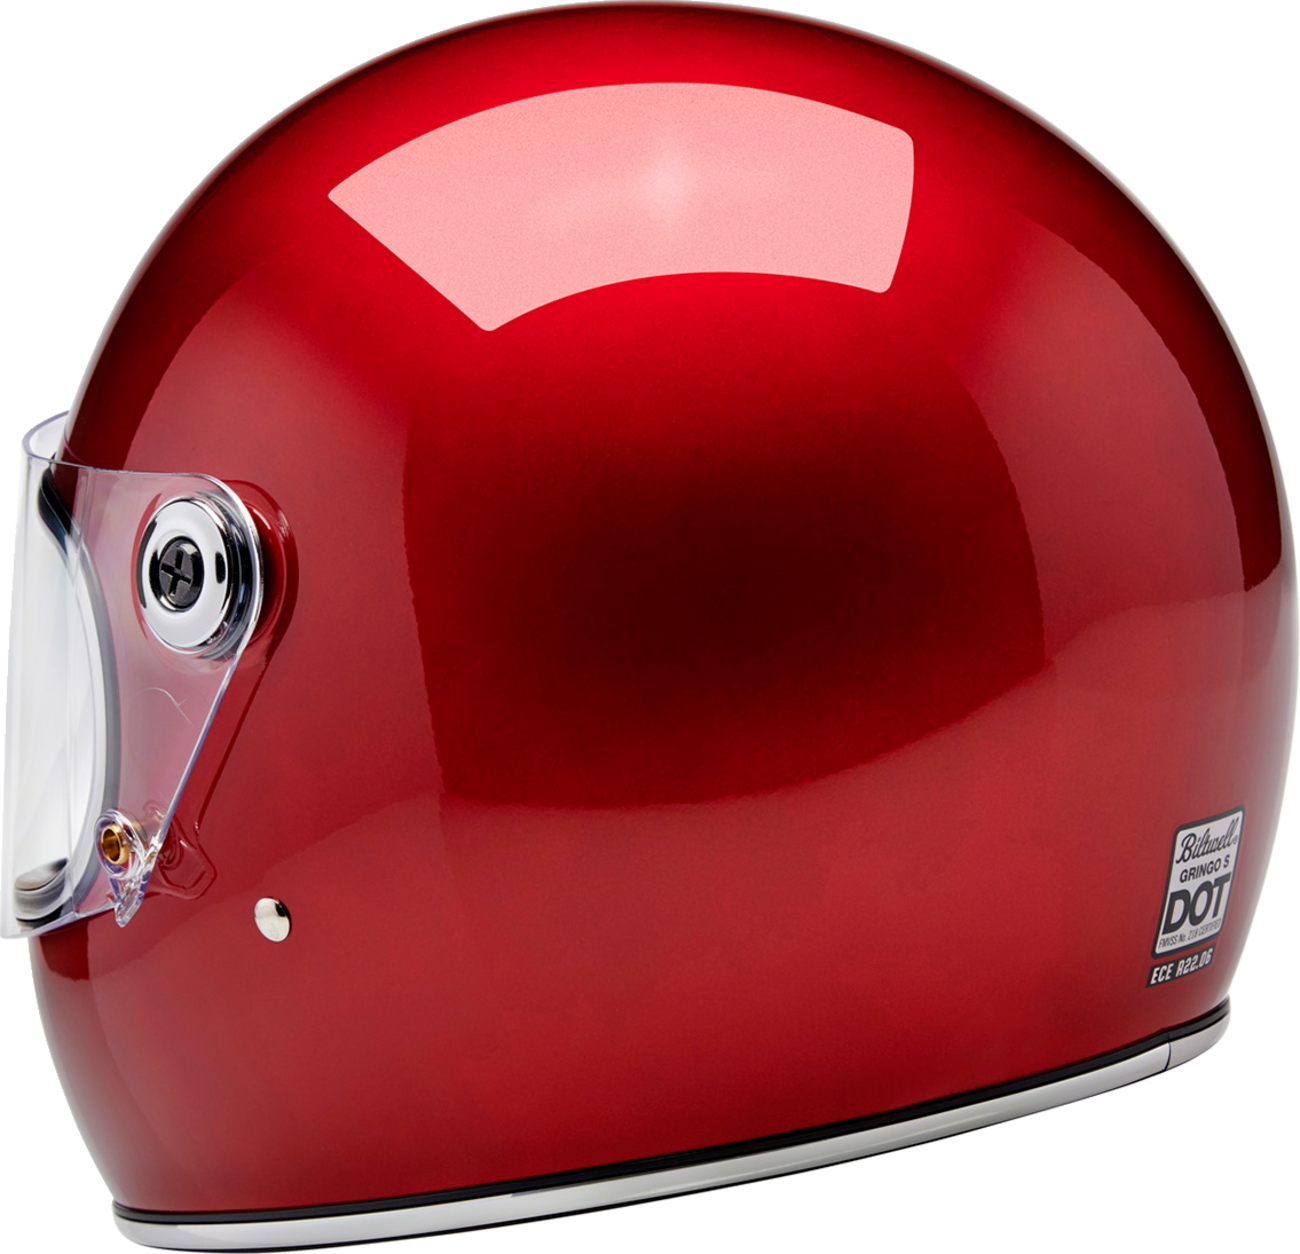 BILTWELL Gringo S Helmet - Metallic Cherry Red - Medium 1003-351-503